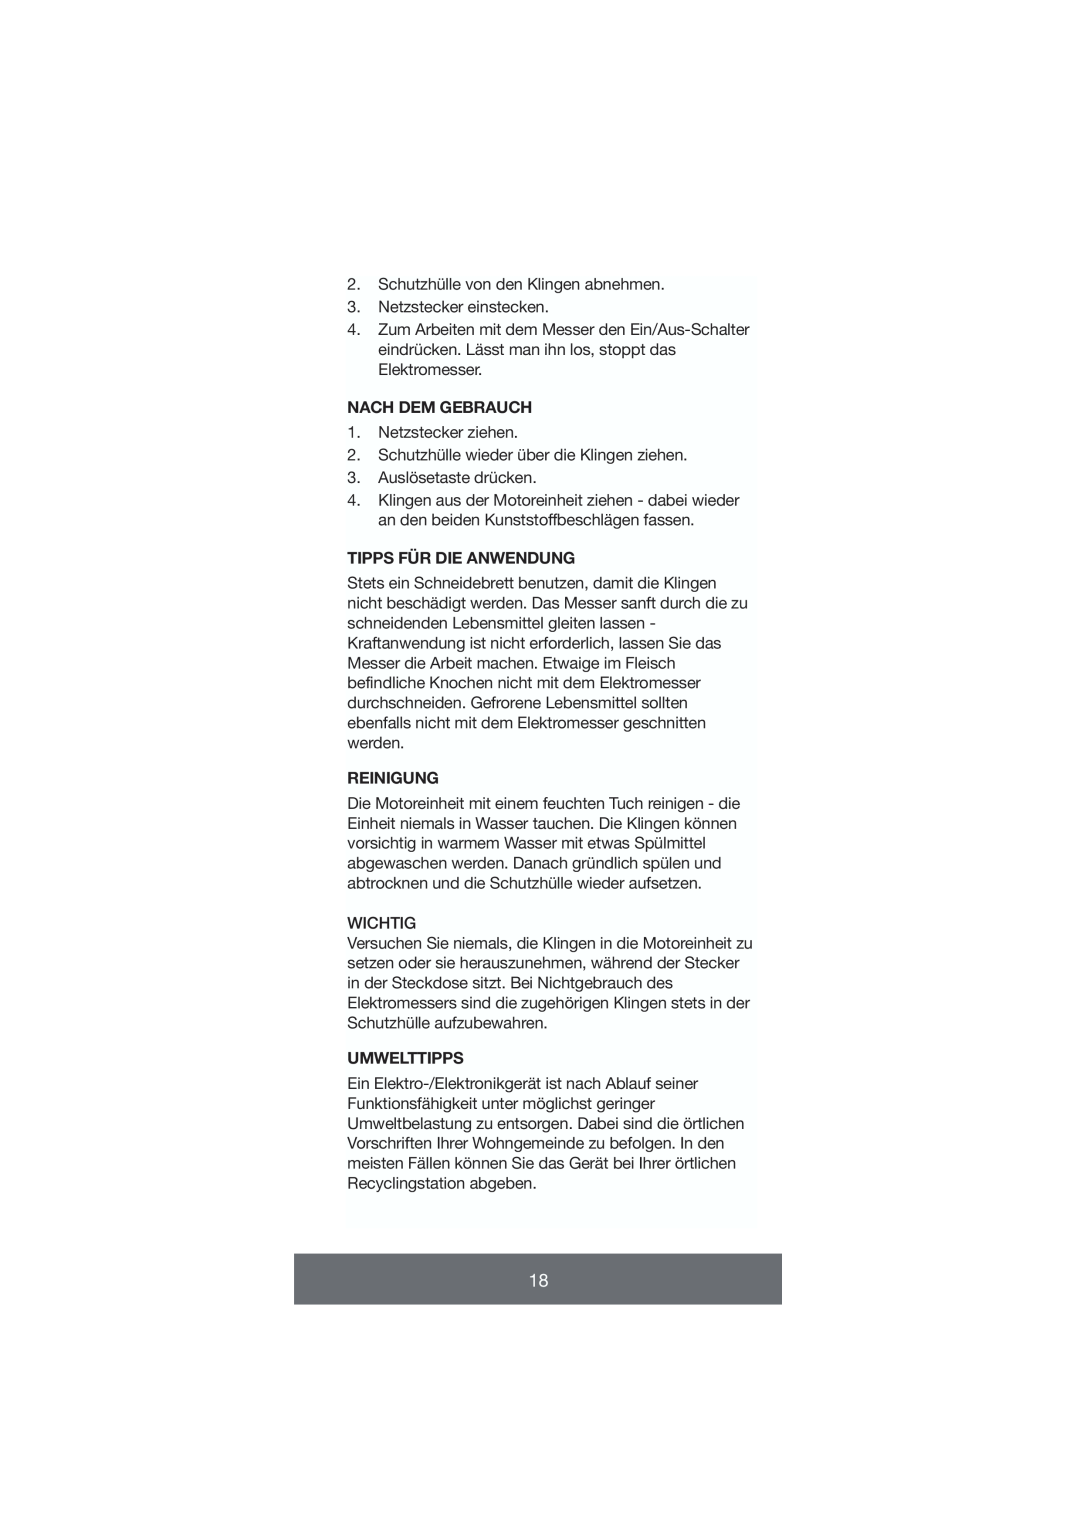 Melissa 646-035 manual Nach Dem Gebrauch, Tipps Für Die Anwendung, Reinigung, Umwelttipps 